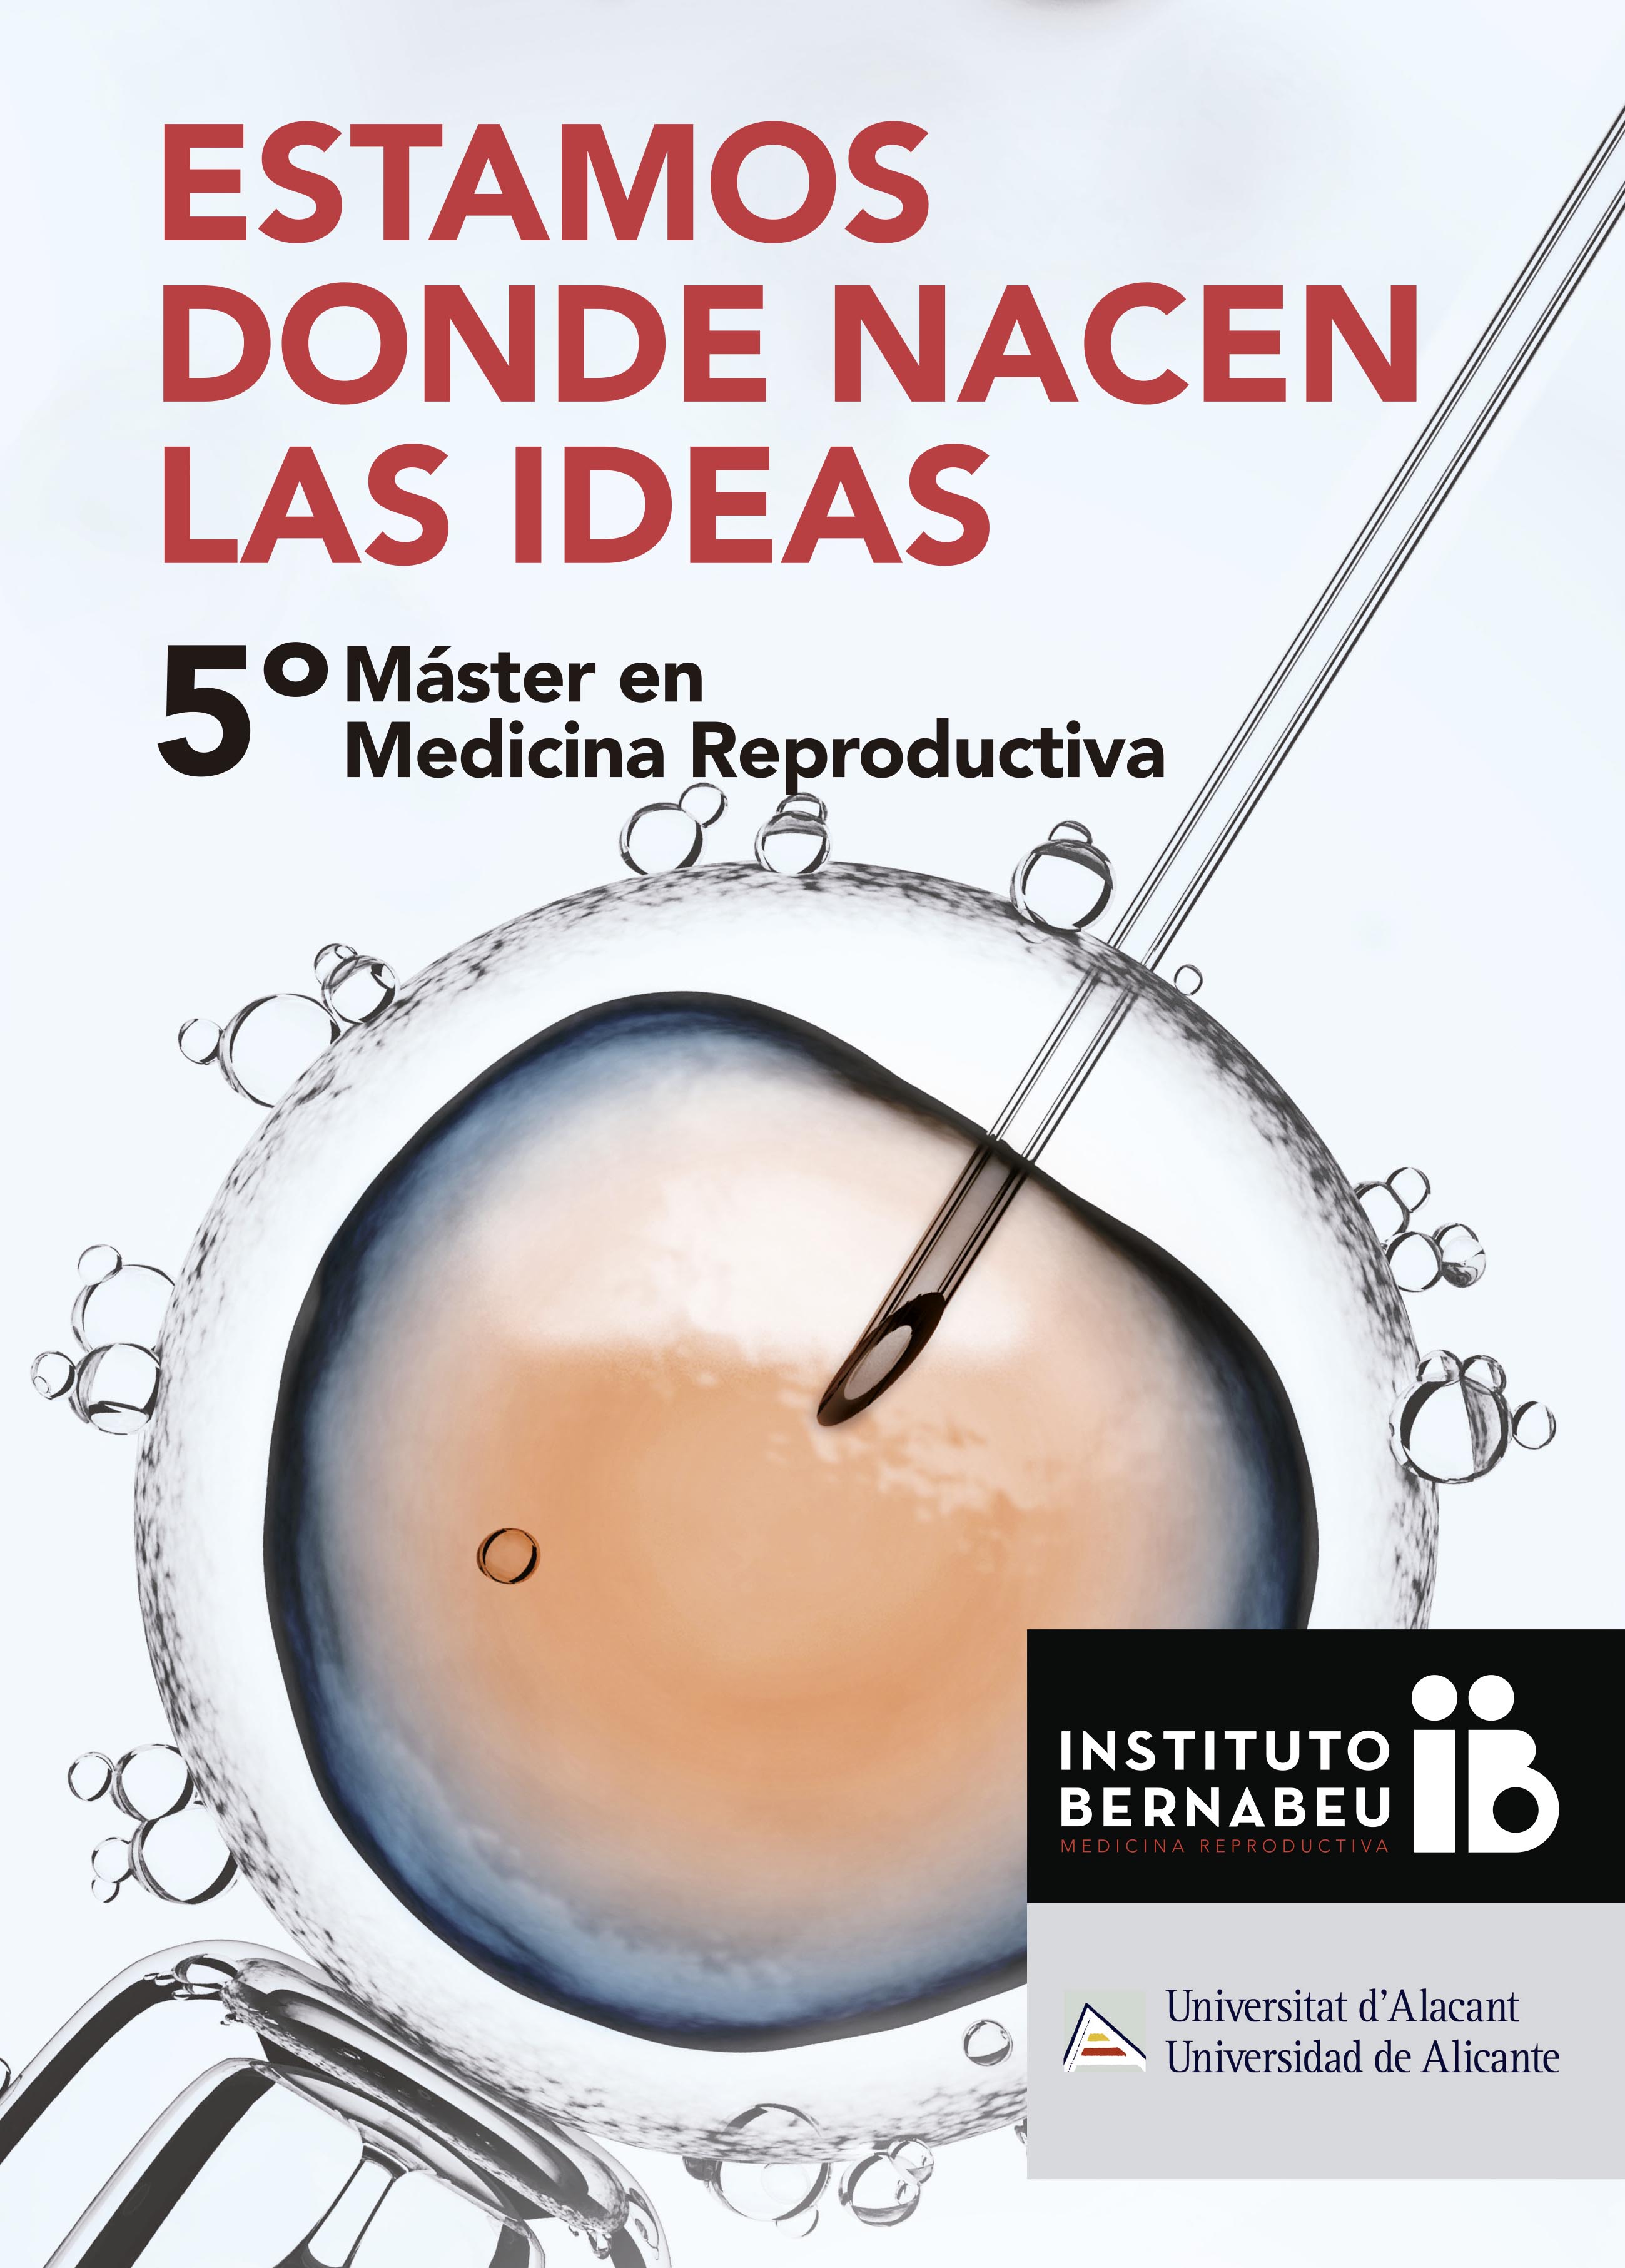 V Máster en Medicina Reproductiva Universidad de Alicante - Instituto Bernabeu